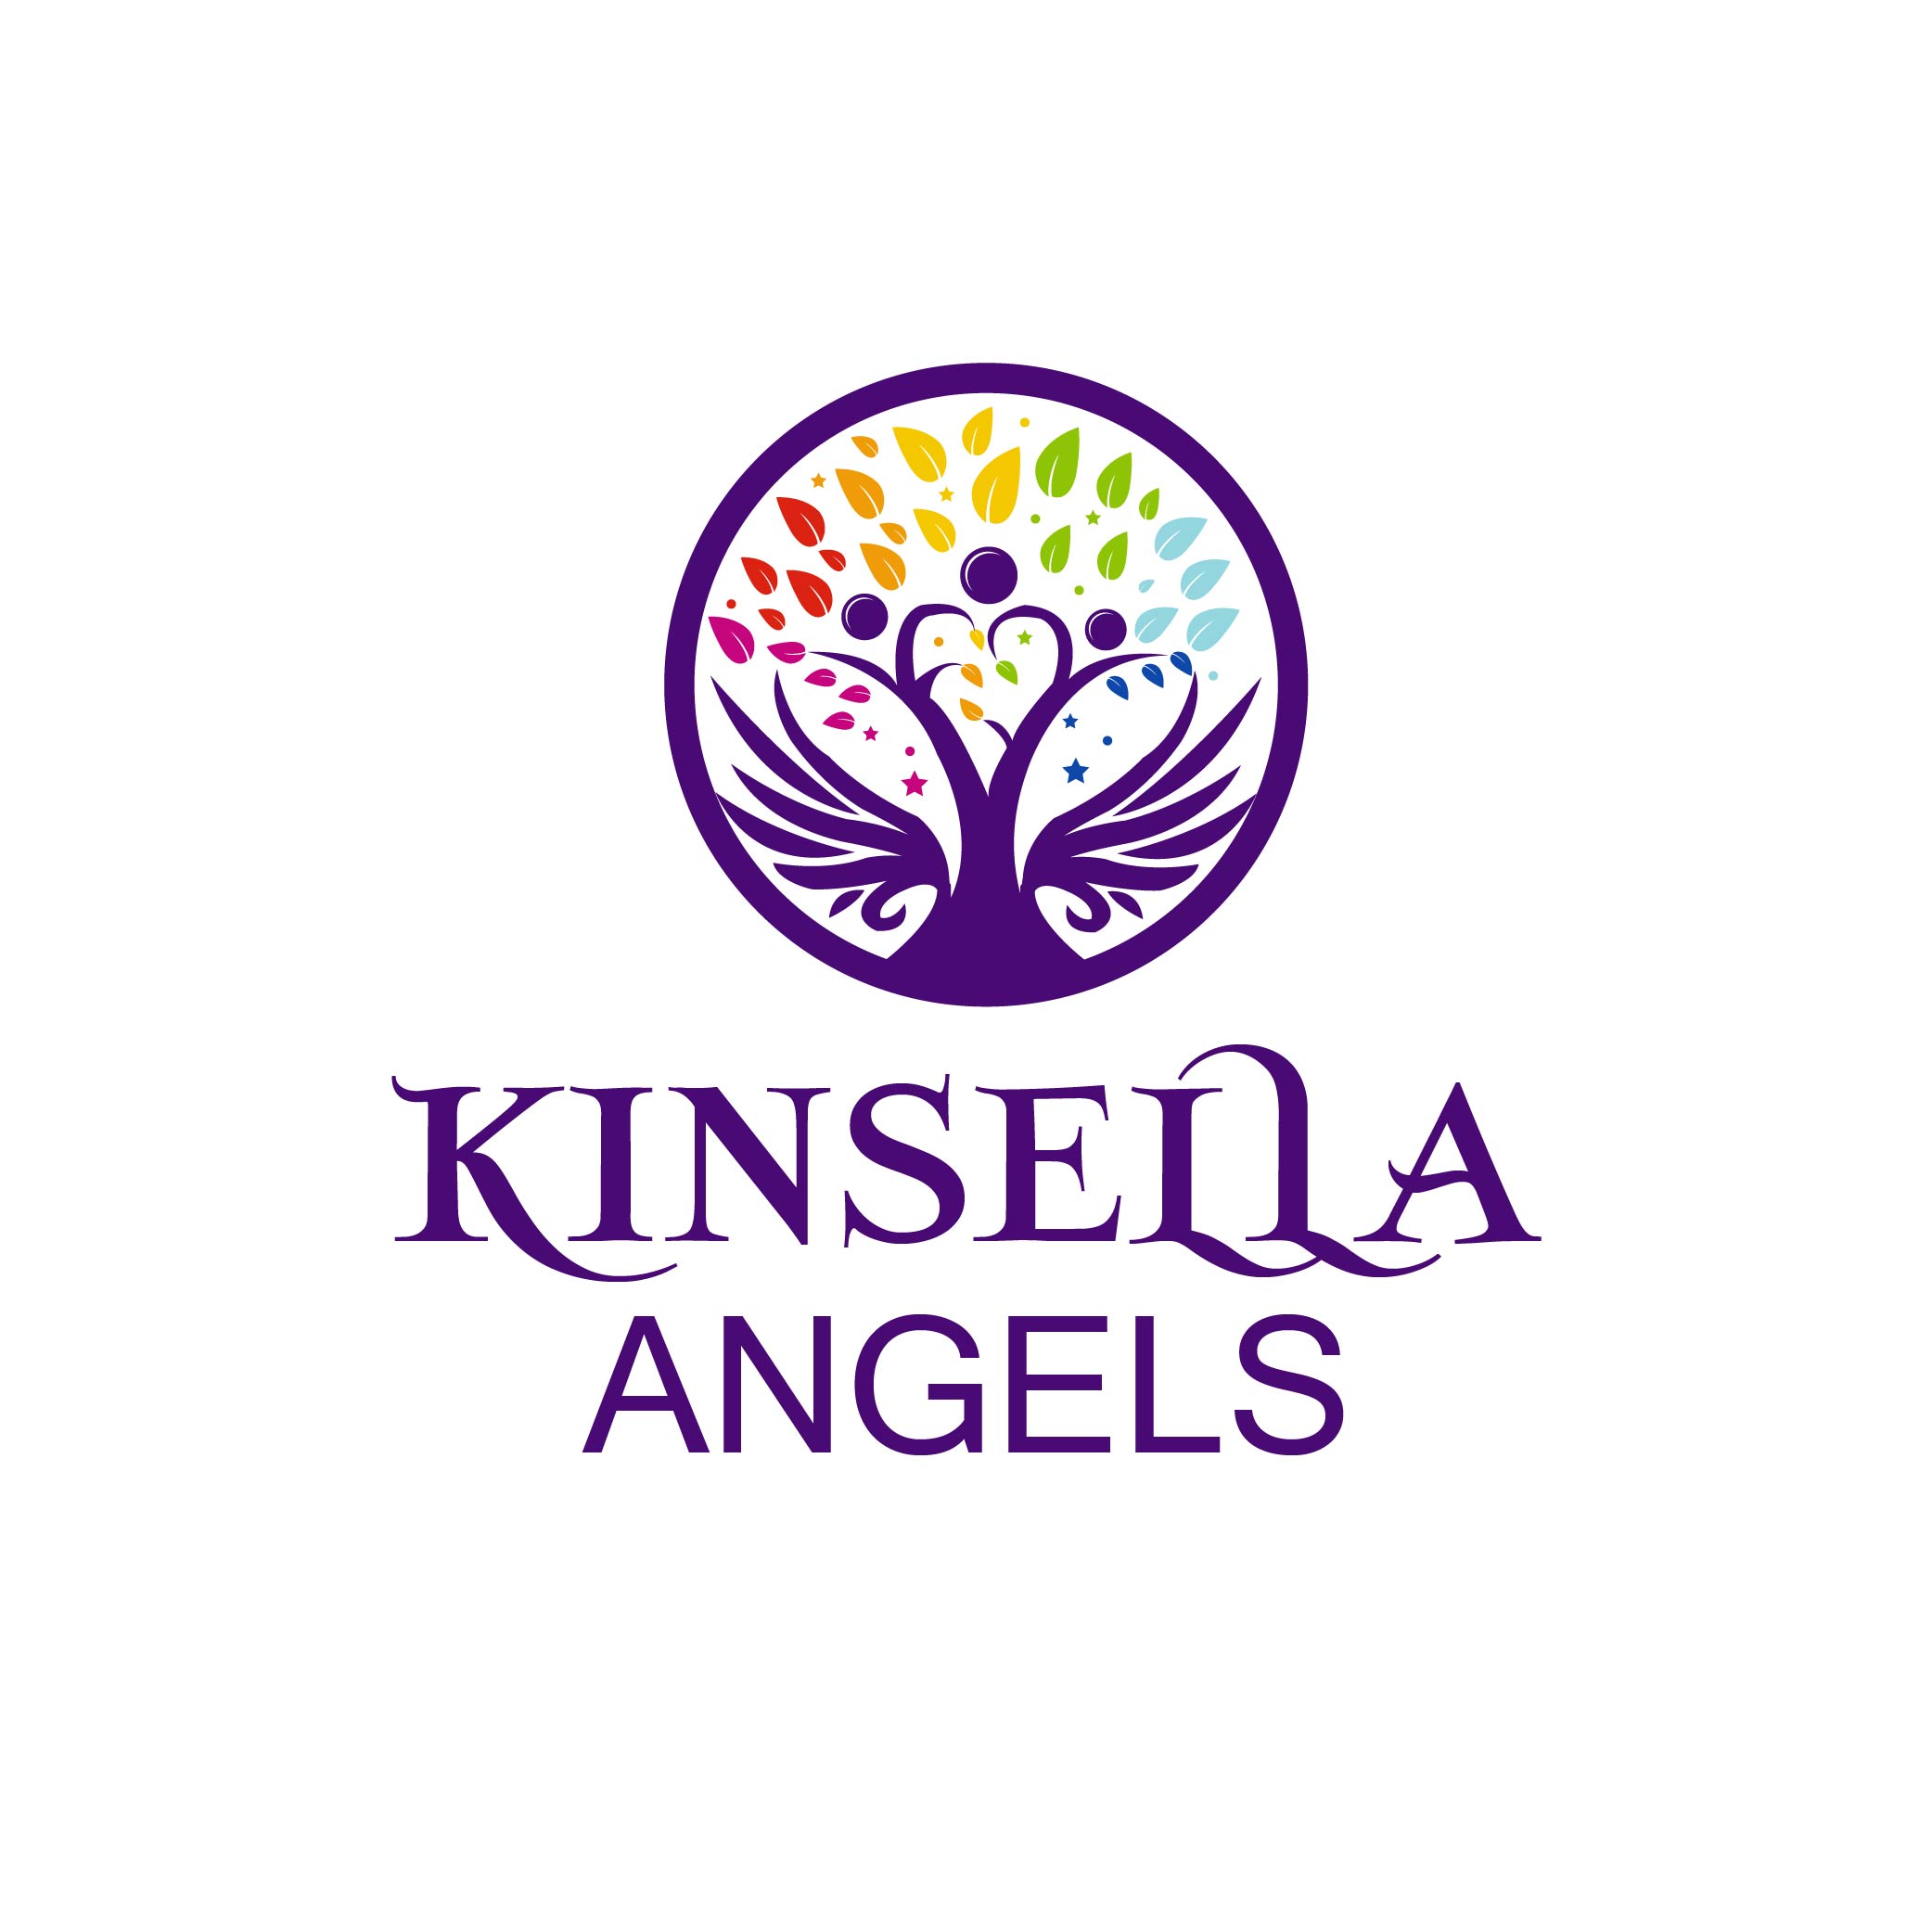 Kinsella Angels logo